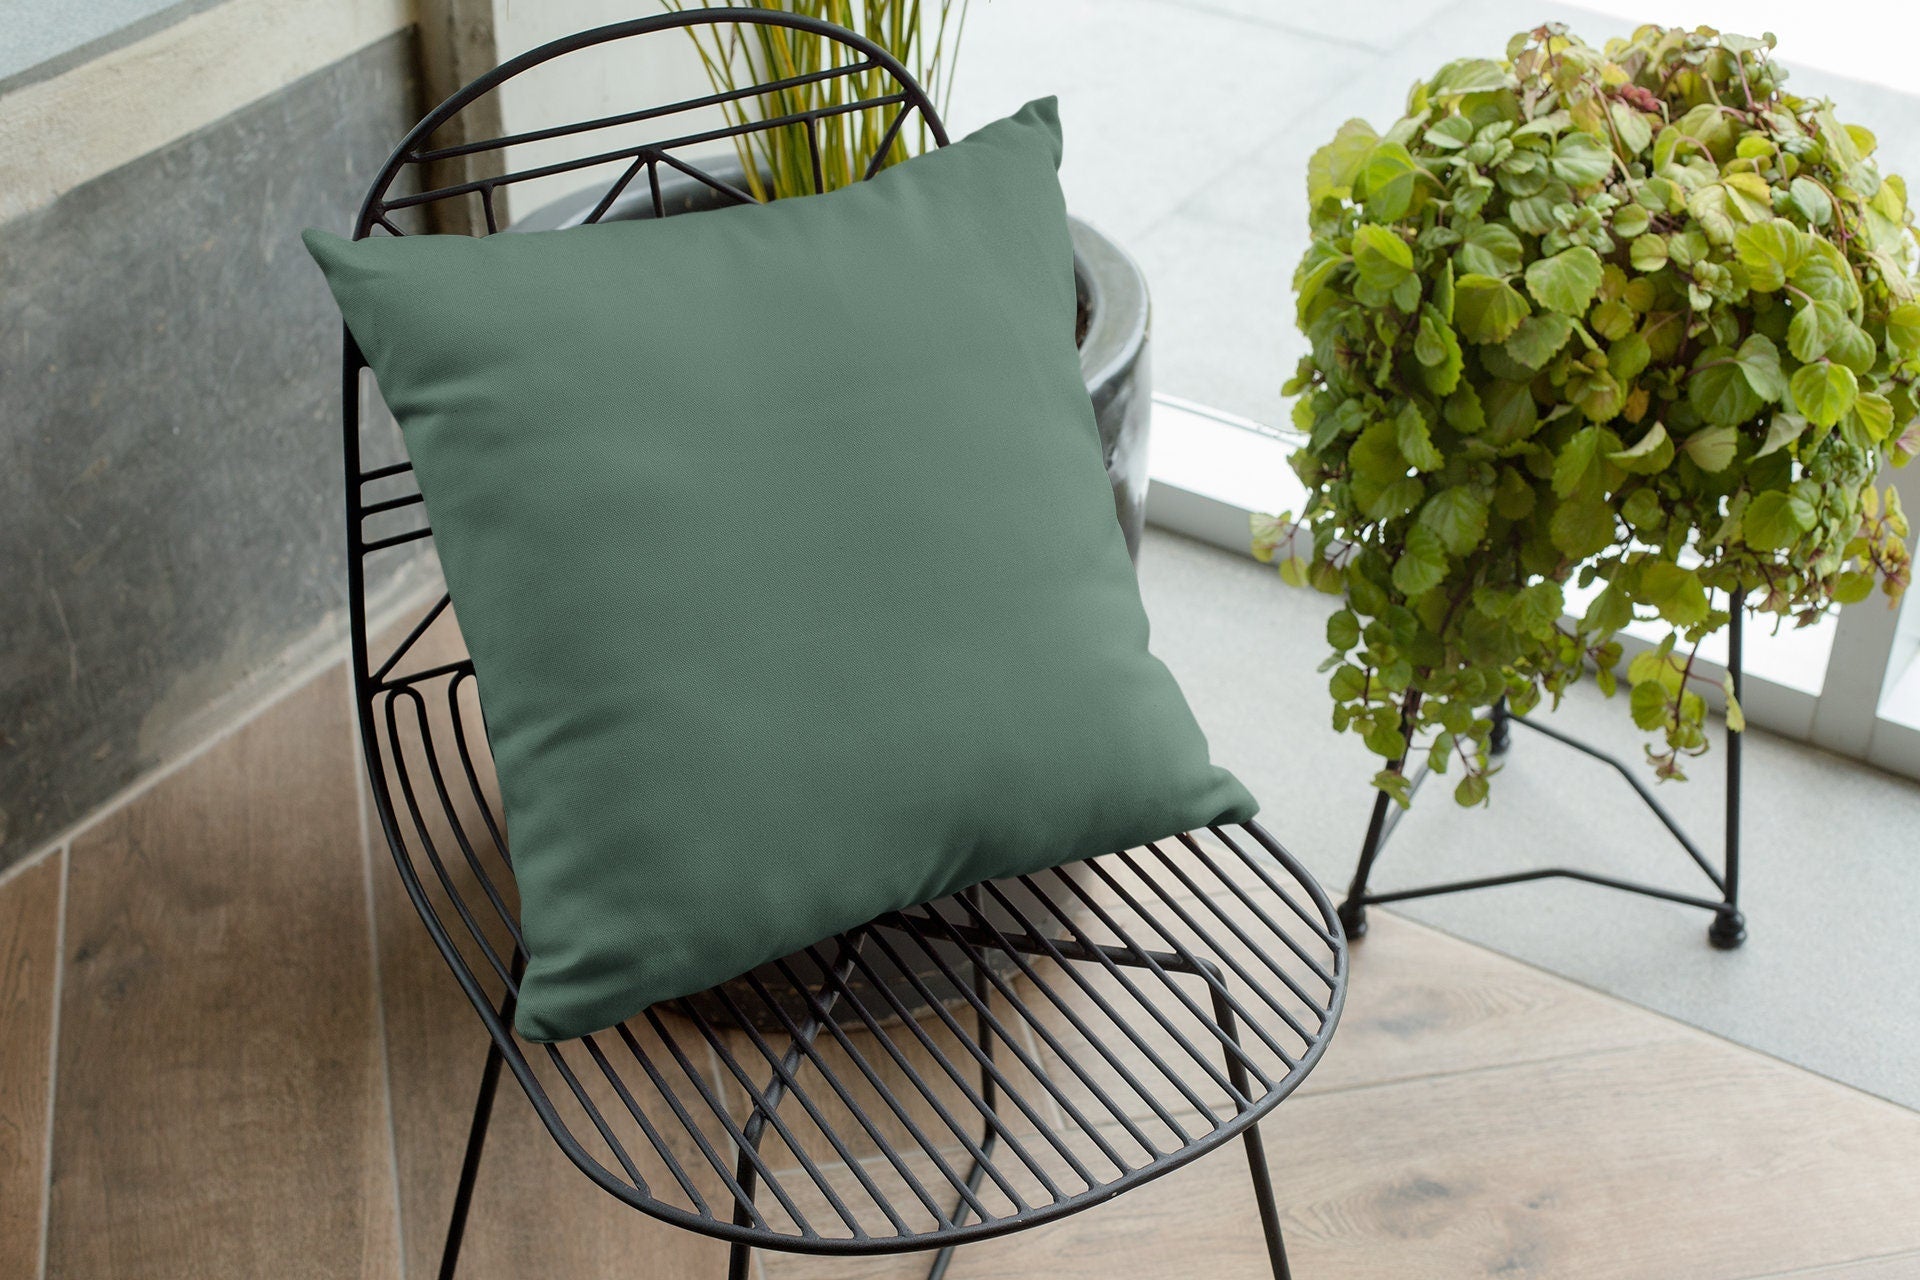 Green outdoor pillow